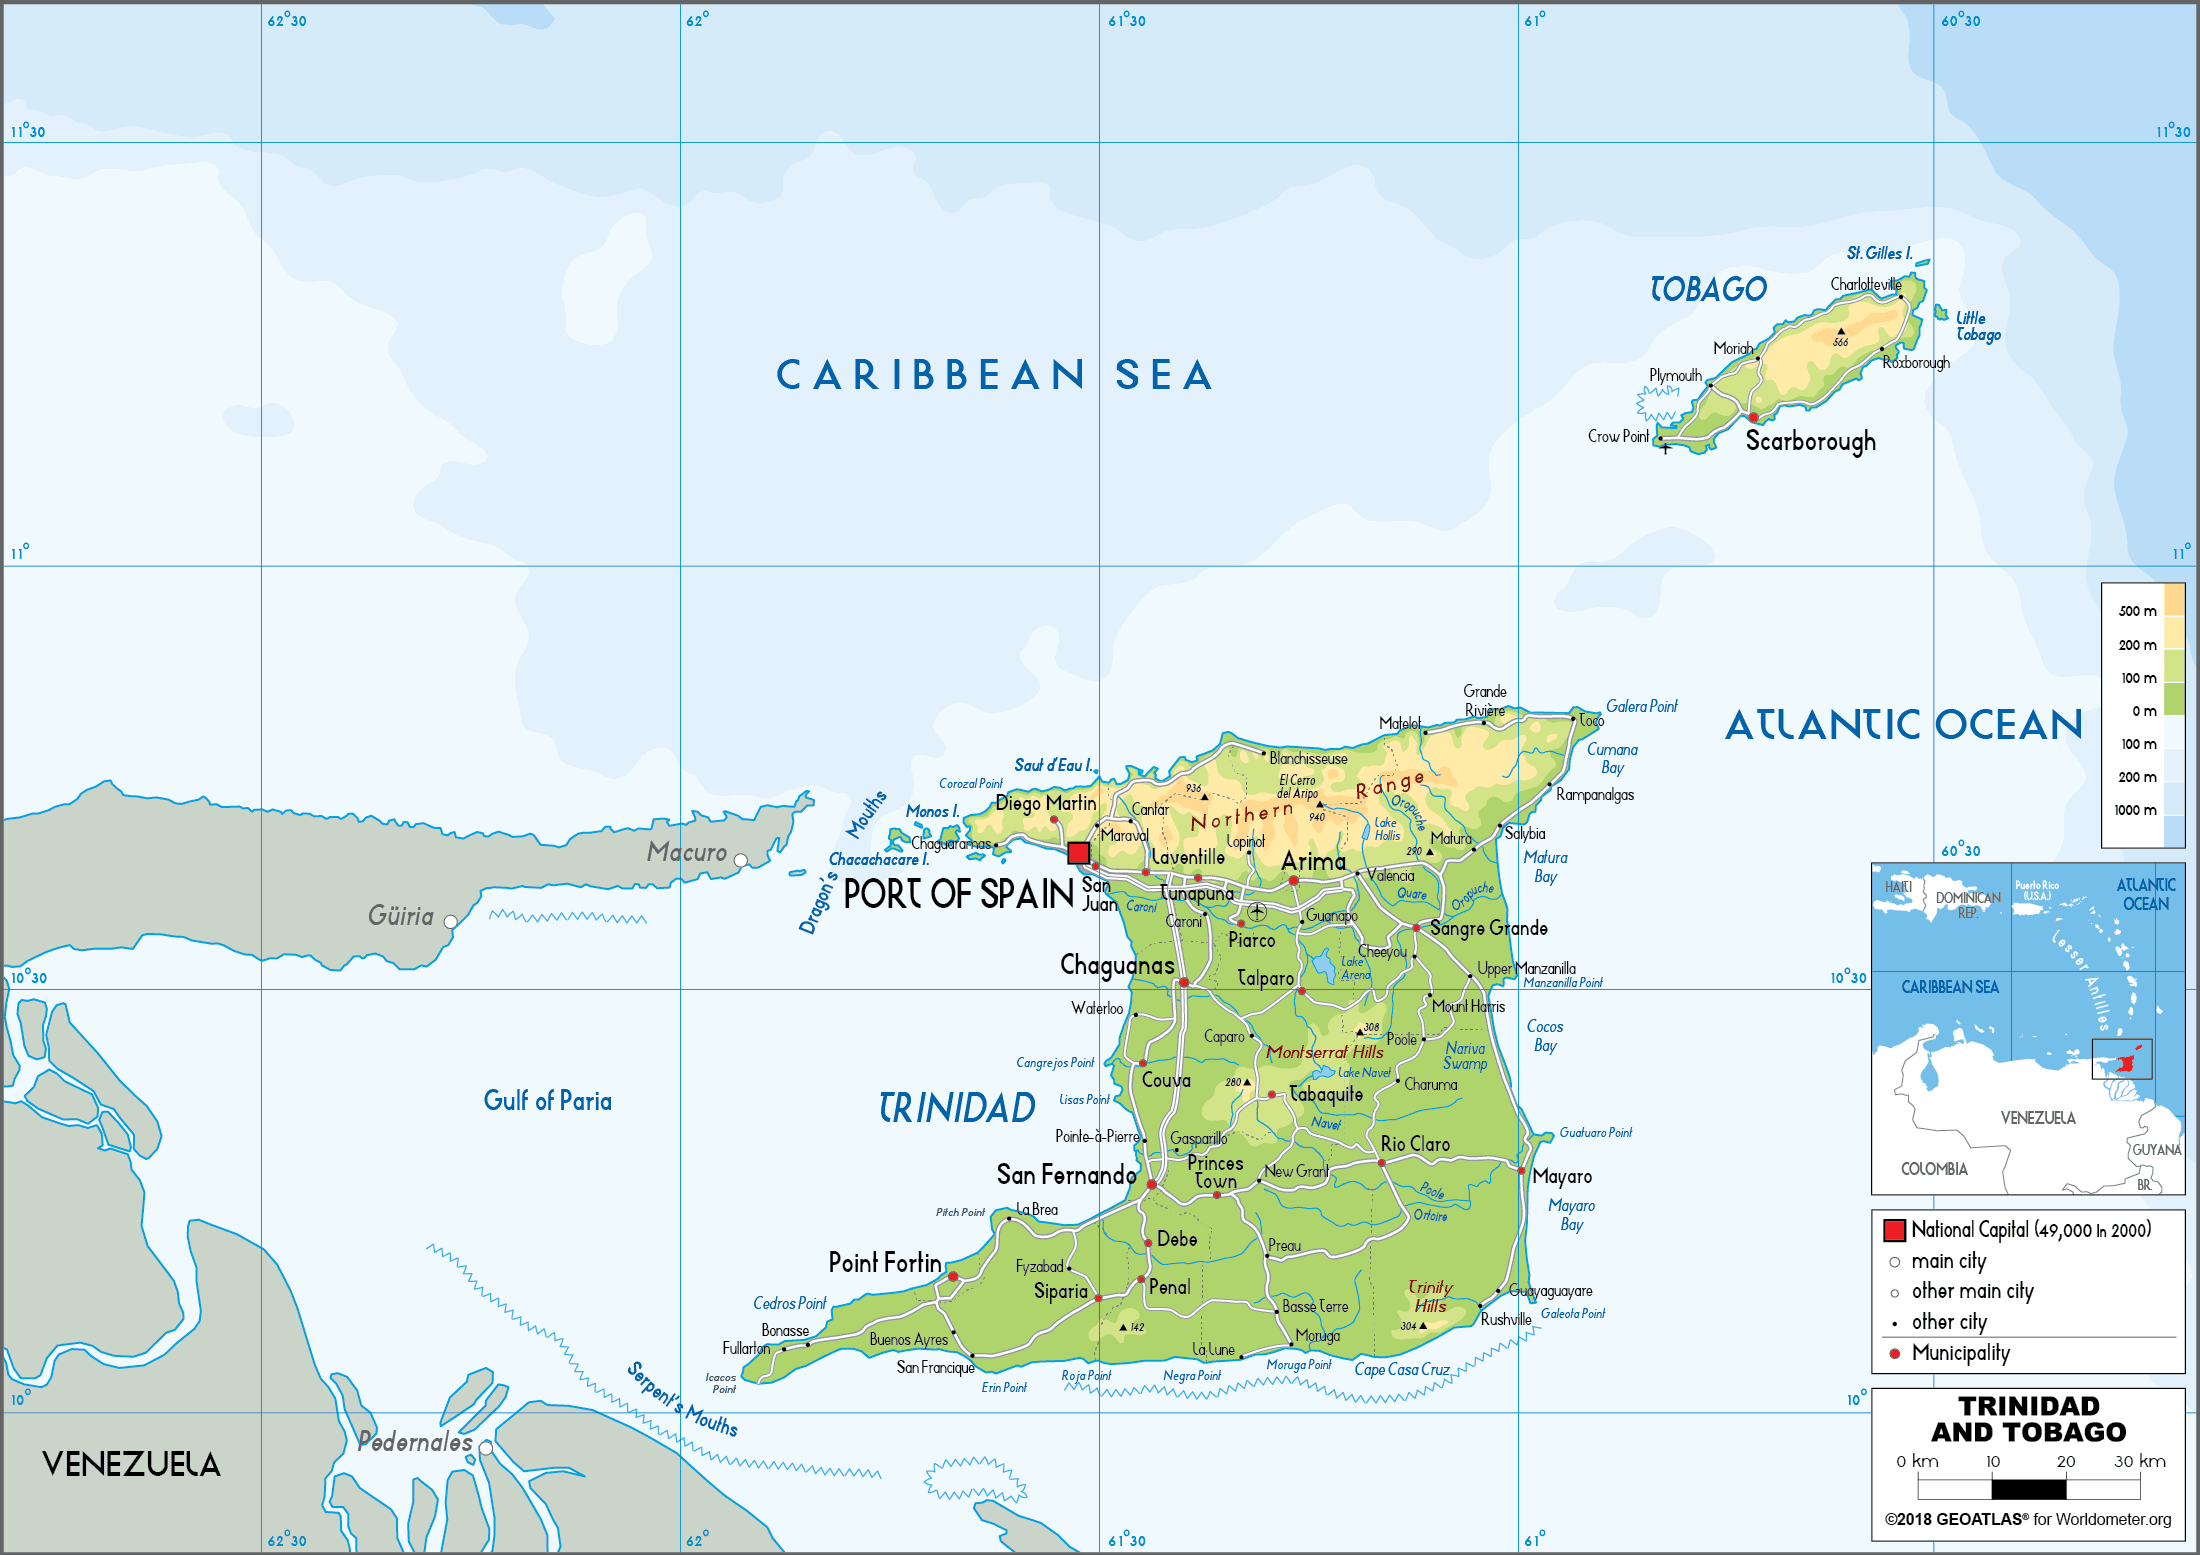 Road Map Of Trinidad And Tobago